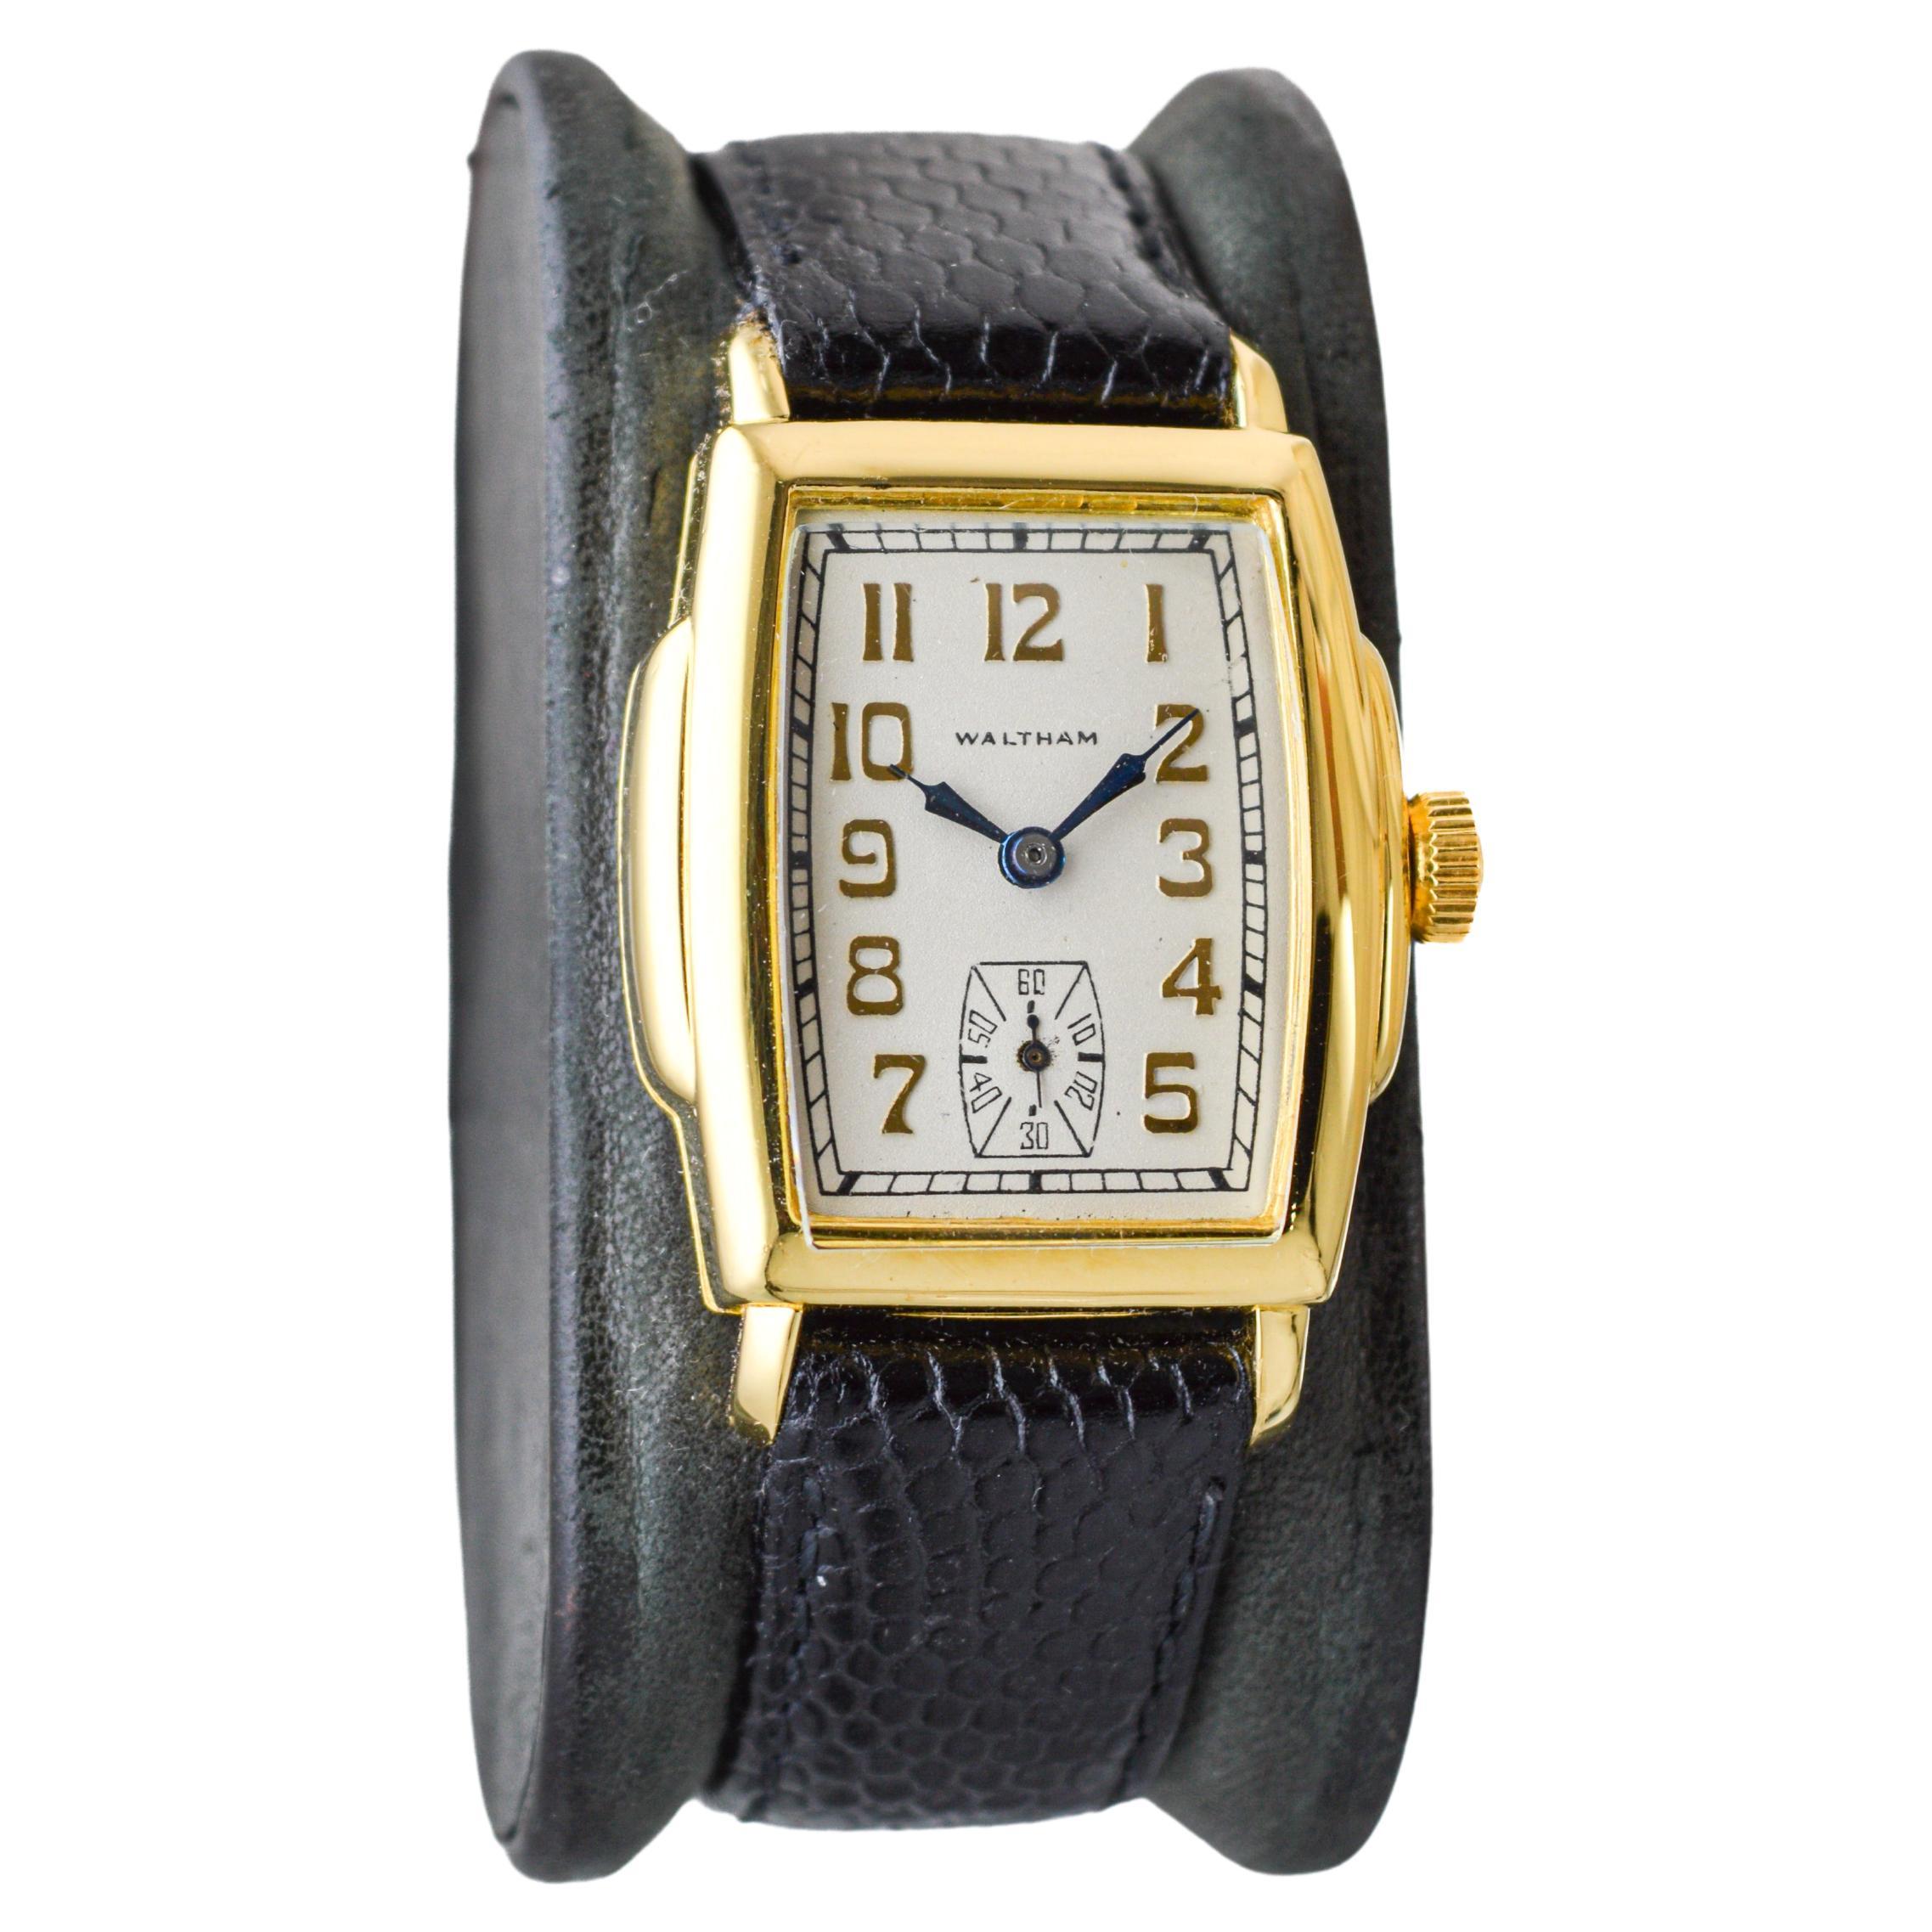 FABRIK / HAUS: Waltham Watch Company
STIL / REFERENZ: Art Deco / Tortue Form
METALL / MATERIAL: Gelbgold gefüllt
CIRCA / JAHR: 1920er Jahre
ABMESSUNGEN / GRÖSSE: Länge 41mm X Breite 28mm
UHRWERK / KALIBER: Handaufzug / 21 Jewels / Kaliber